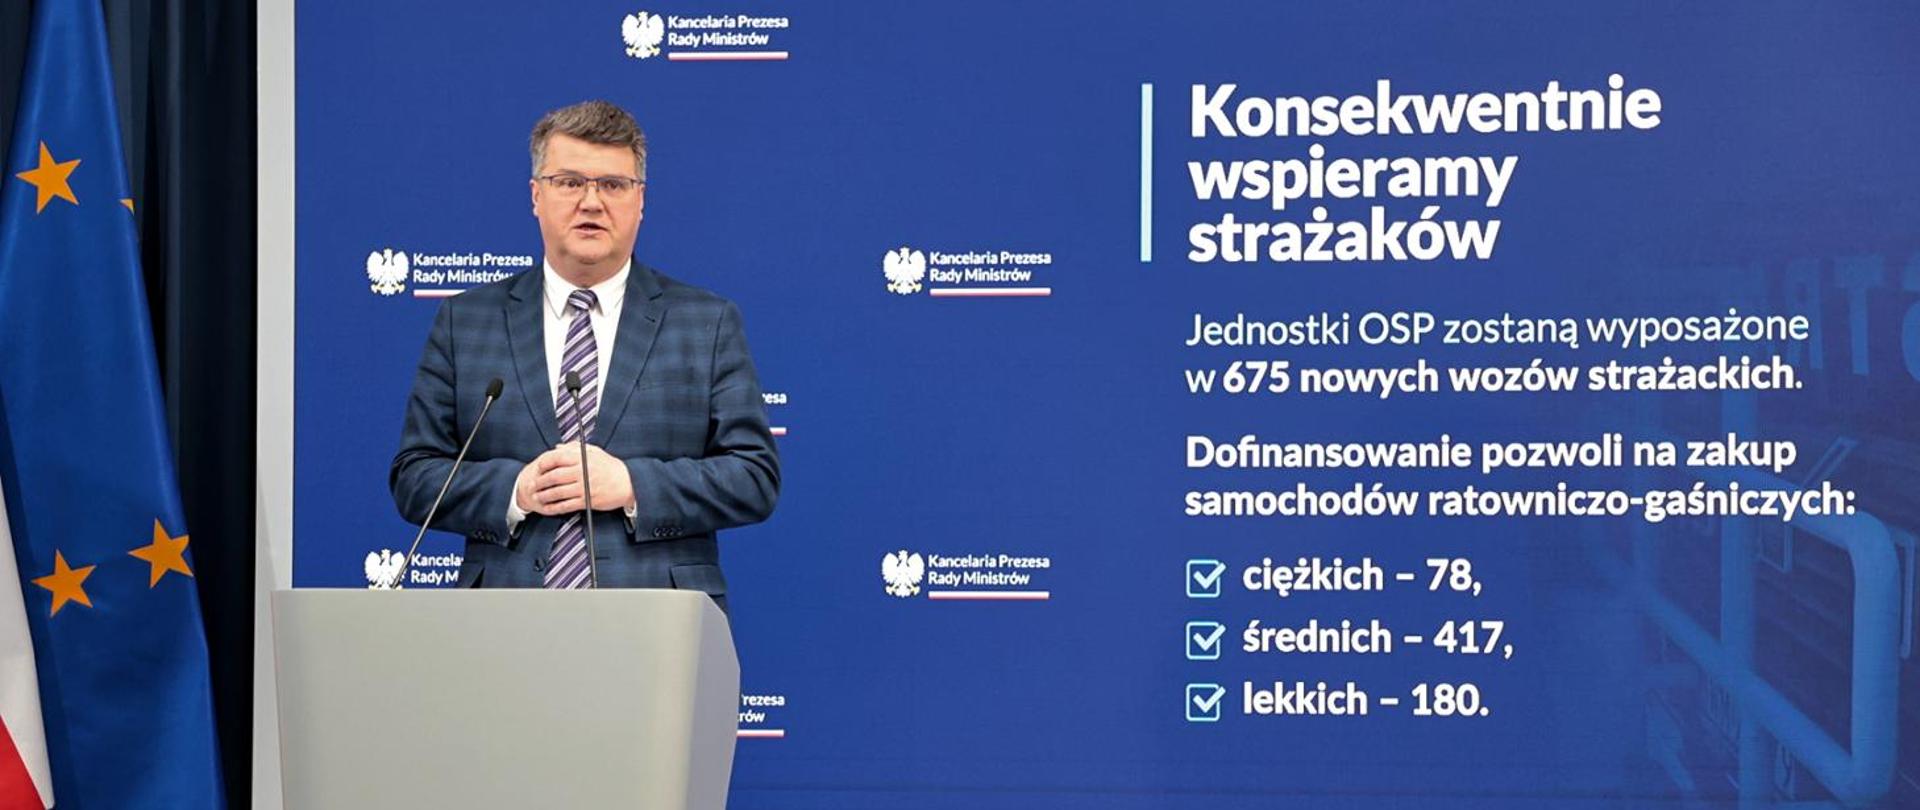 Minister Wąsik na zdjęciu.